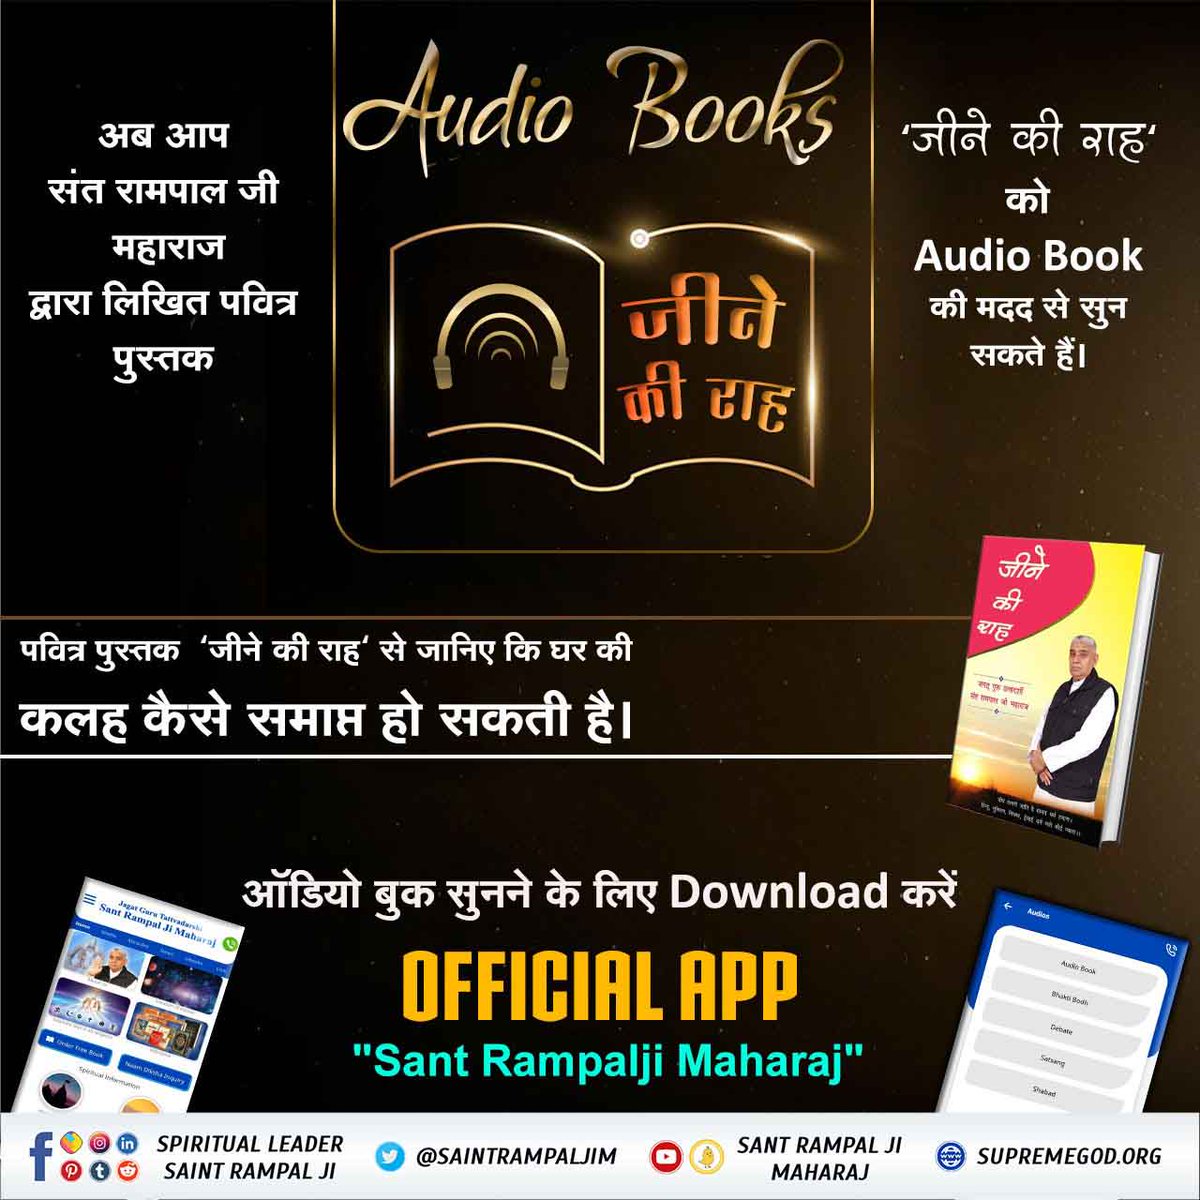 #AudioBook_JeeneKiRah
पवित्र पुस्तक 'जीने की राह' से जानिए कि घर की कलह कैसे समाप्त हो सकती है।
 Audio Book सुनने के लिए Download करें Official App 'SANT RAMPAL JI MAHARAJ' 
@ShatruganSinha 
@RahulGandhi